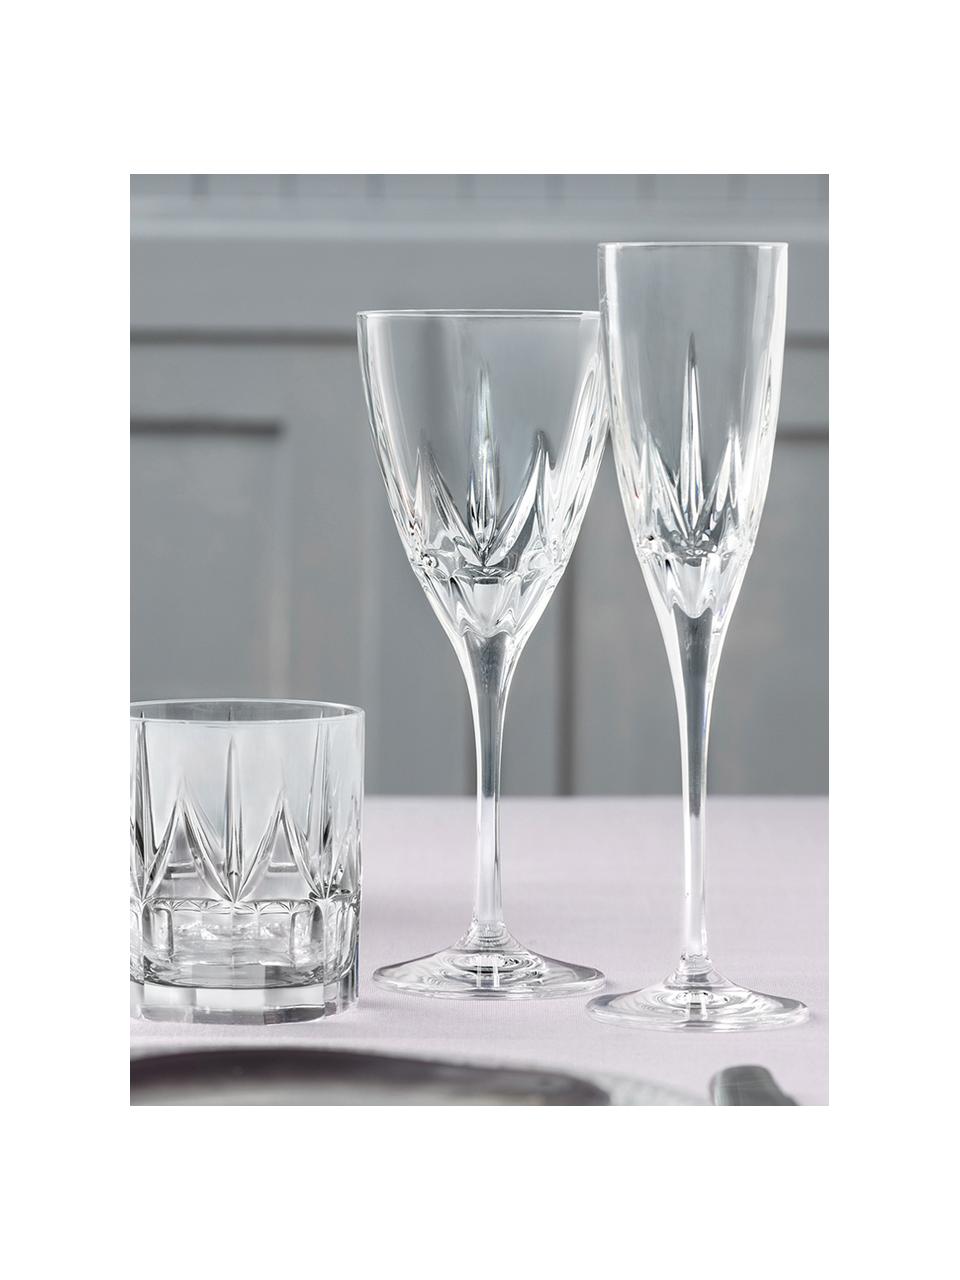 Křišťálové sklenice na sekt Chic, 6 ks, Křišťál Luxion, Transparentní, Ø 6 cm, V 24 cm, 150 ml